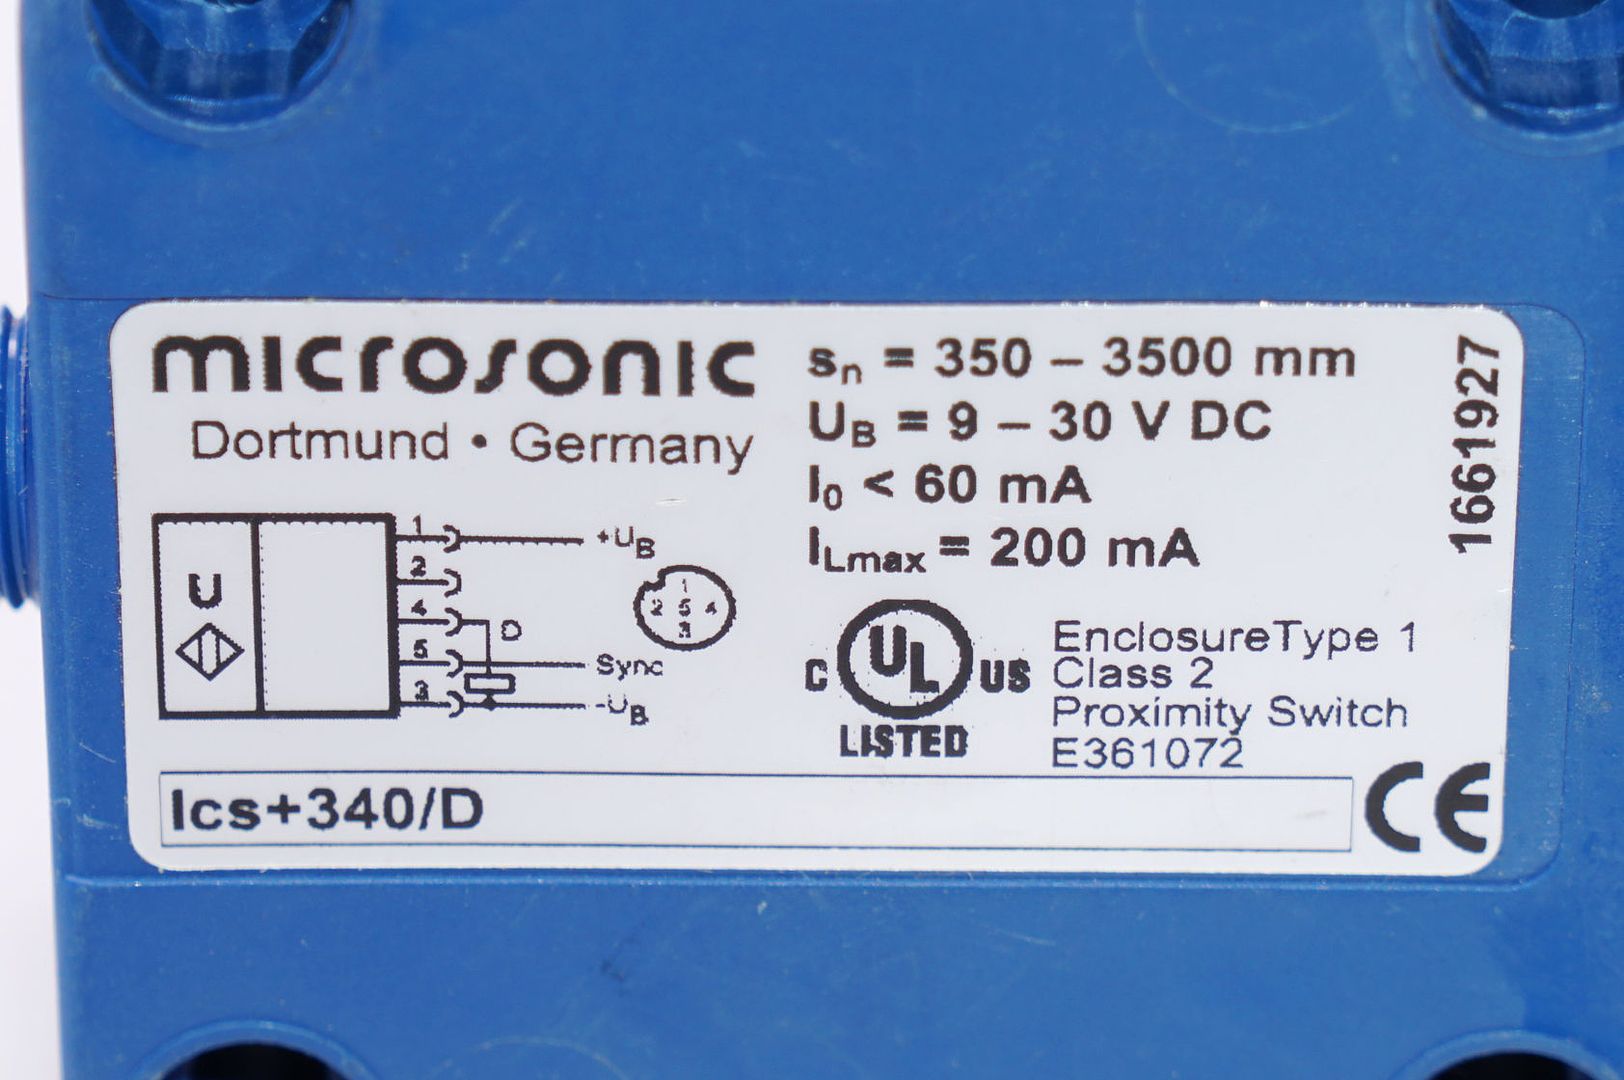 9..30VDC 5.000 mm MICROSONIC Ultraschallsensor  lcs+340//D  350 mm...3500 mm